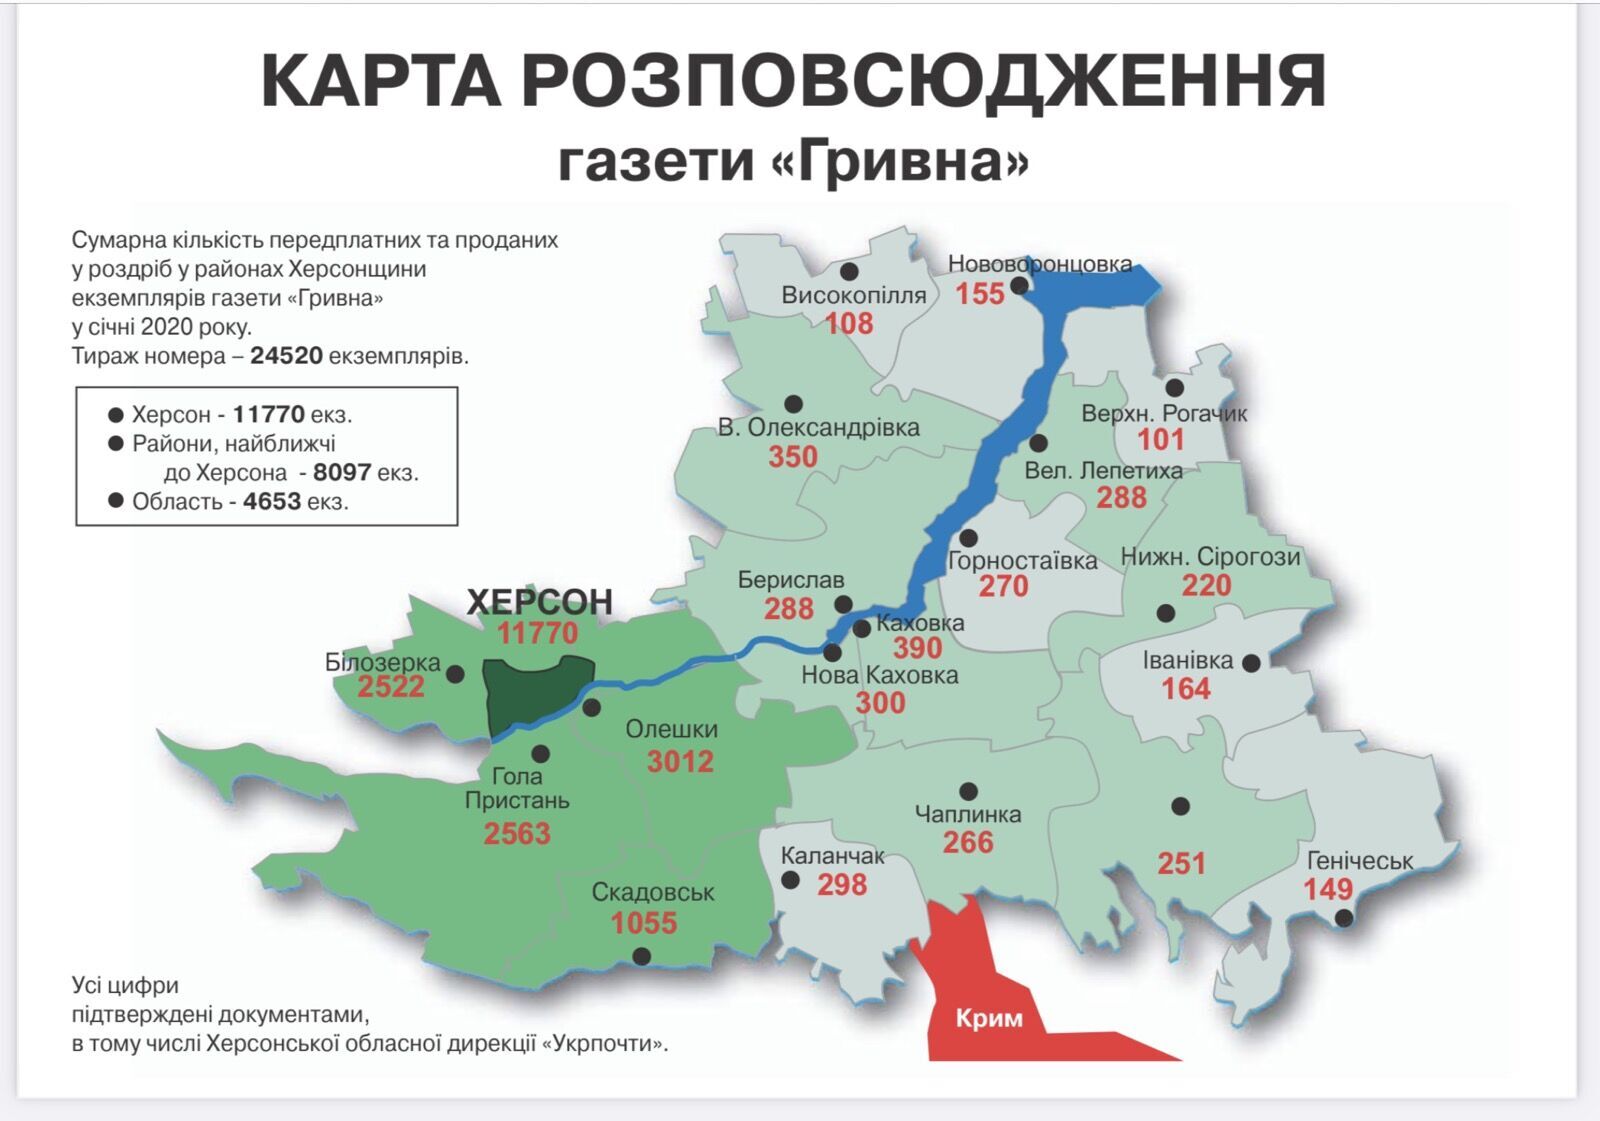 Карта распространения газеты "Гривня"